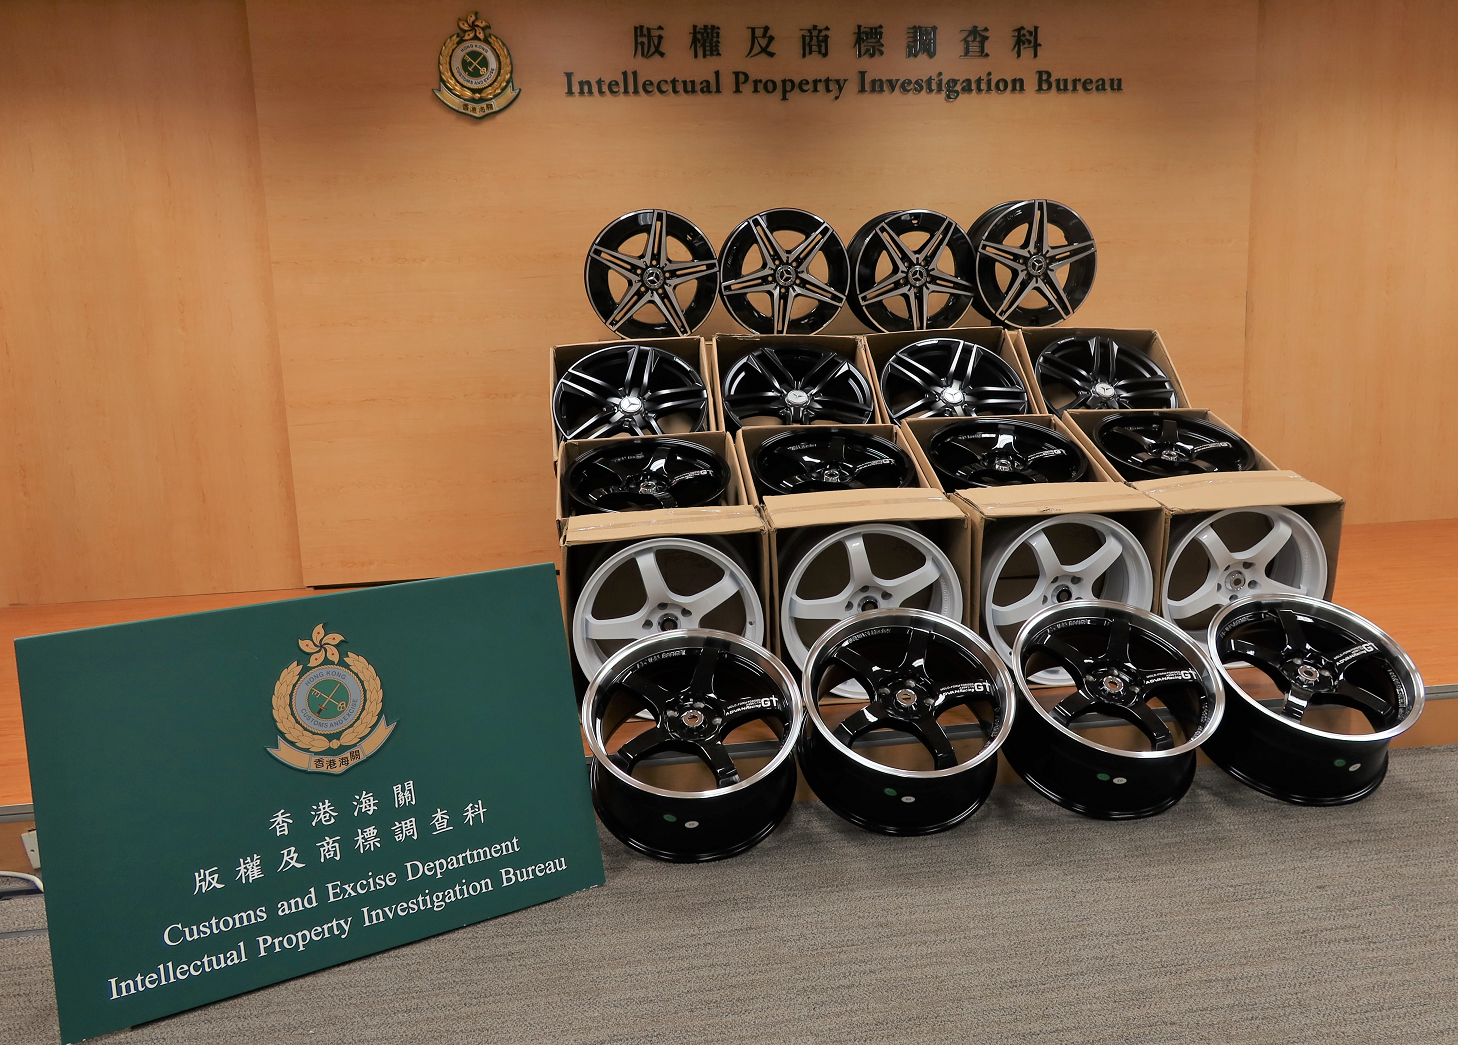 香港海關昨日（八月十一日）採取執法行動打擊售賣冒牌汽車輪圈，在一間汽車零件店鋪檢獲四十二個懷疑冒牌汽車輪圈，估計市值約五萬元。圖示部分檢獲的懷疑冒牌汽車輪圈。